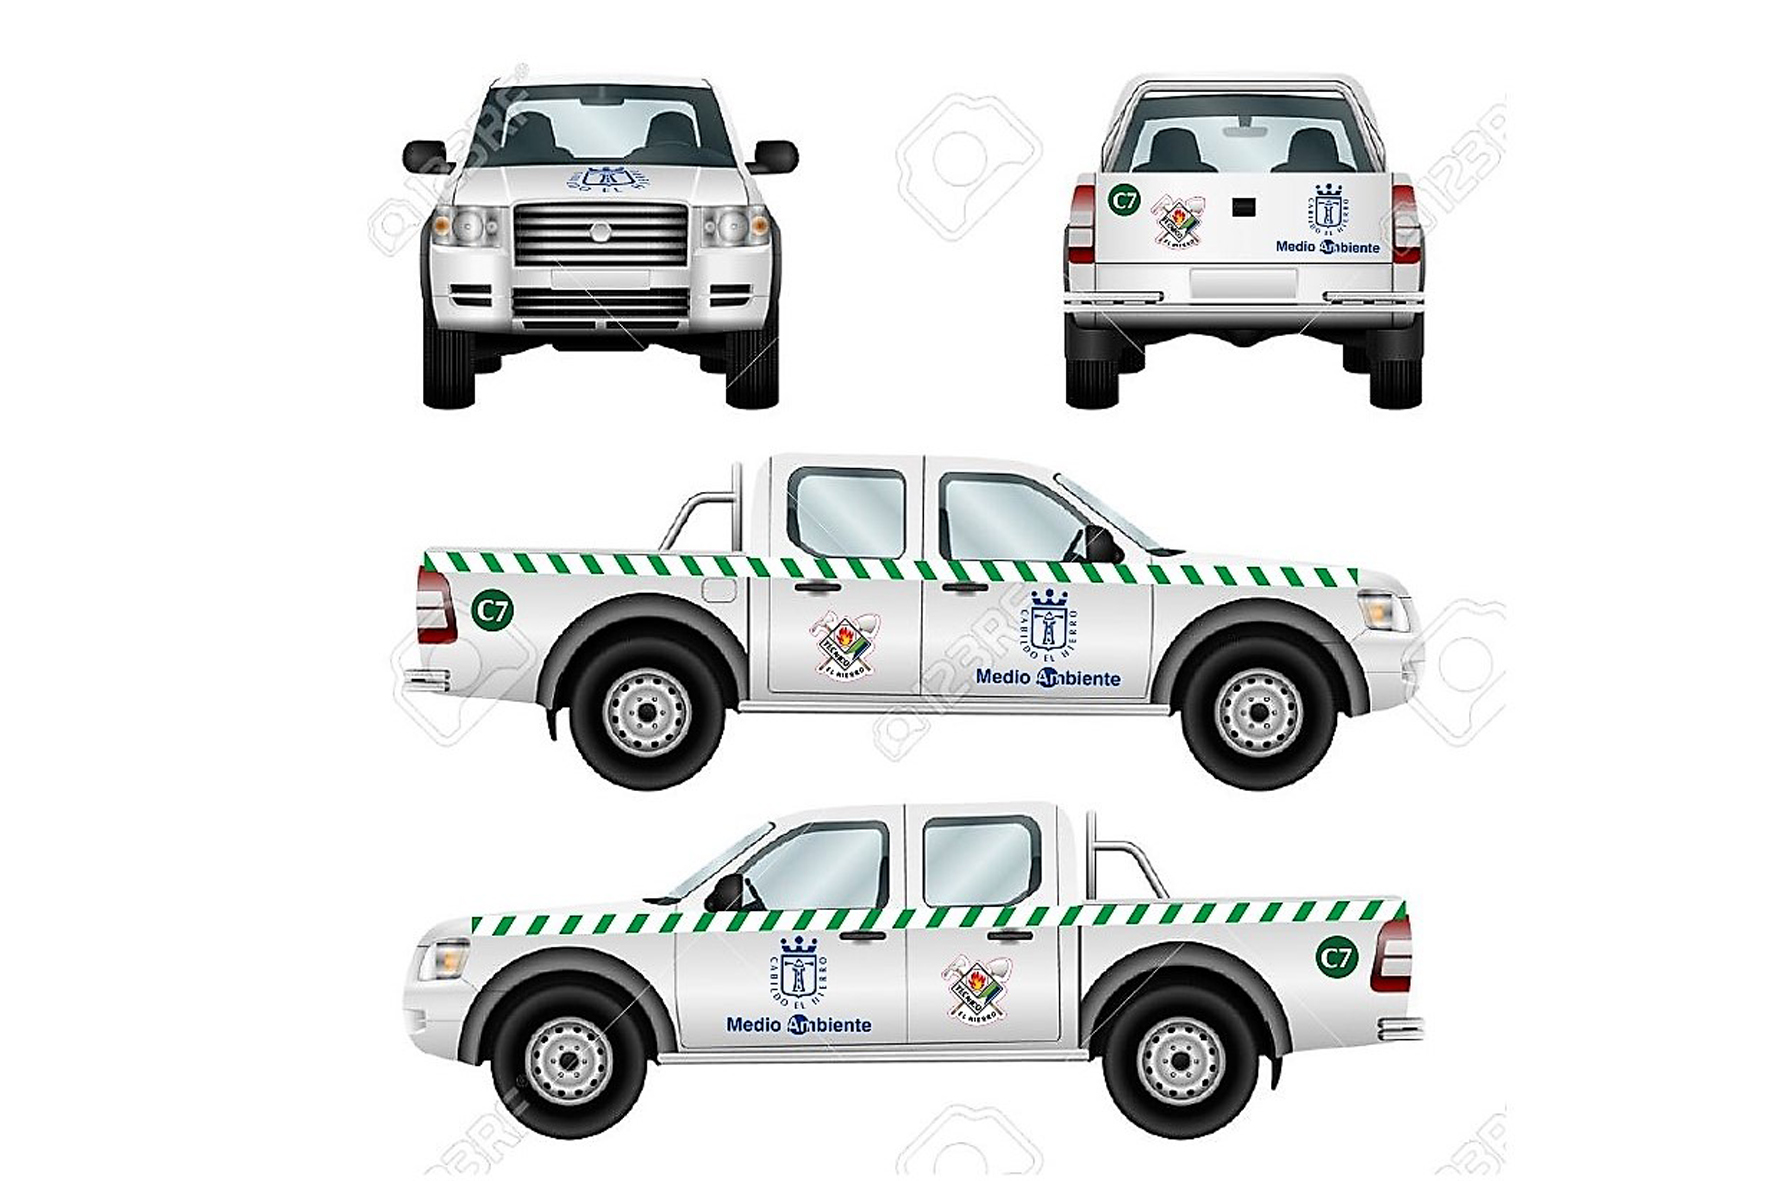 El Cabildo de El Hierro adquiere 15 vehículos para la prevención y lucha contra incendios forestales